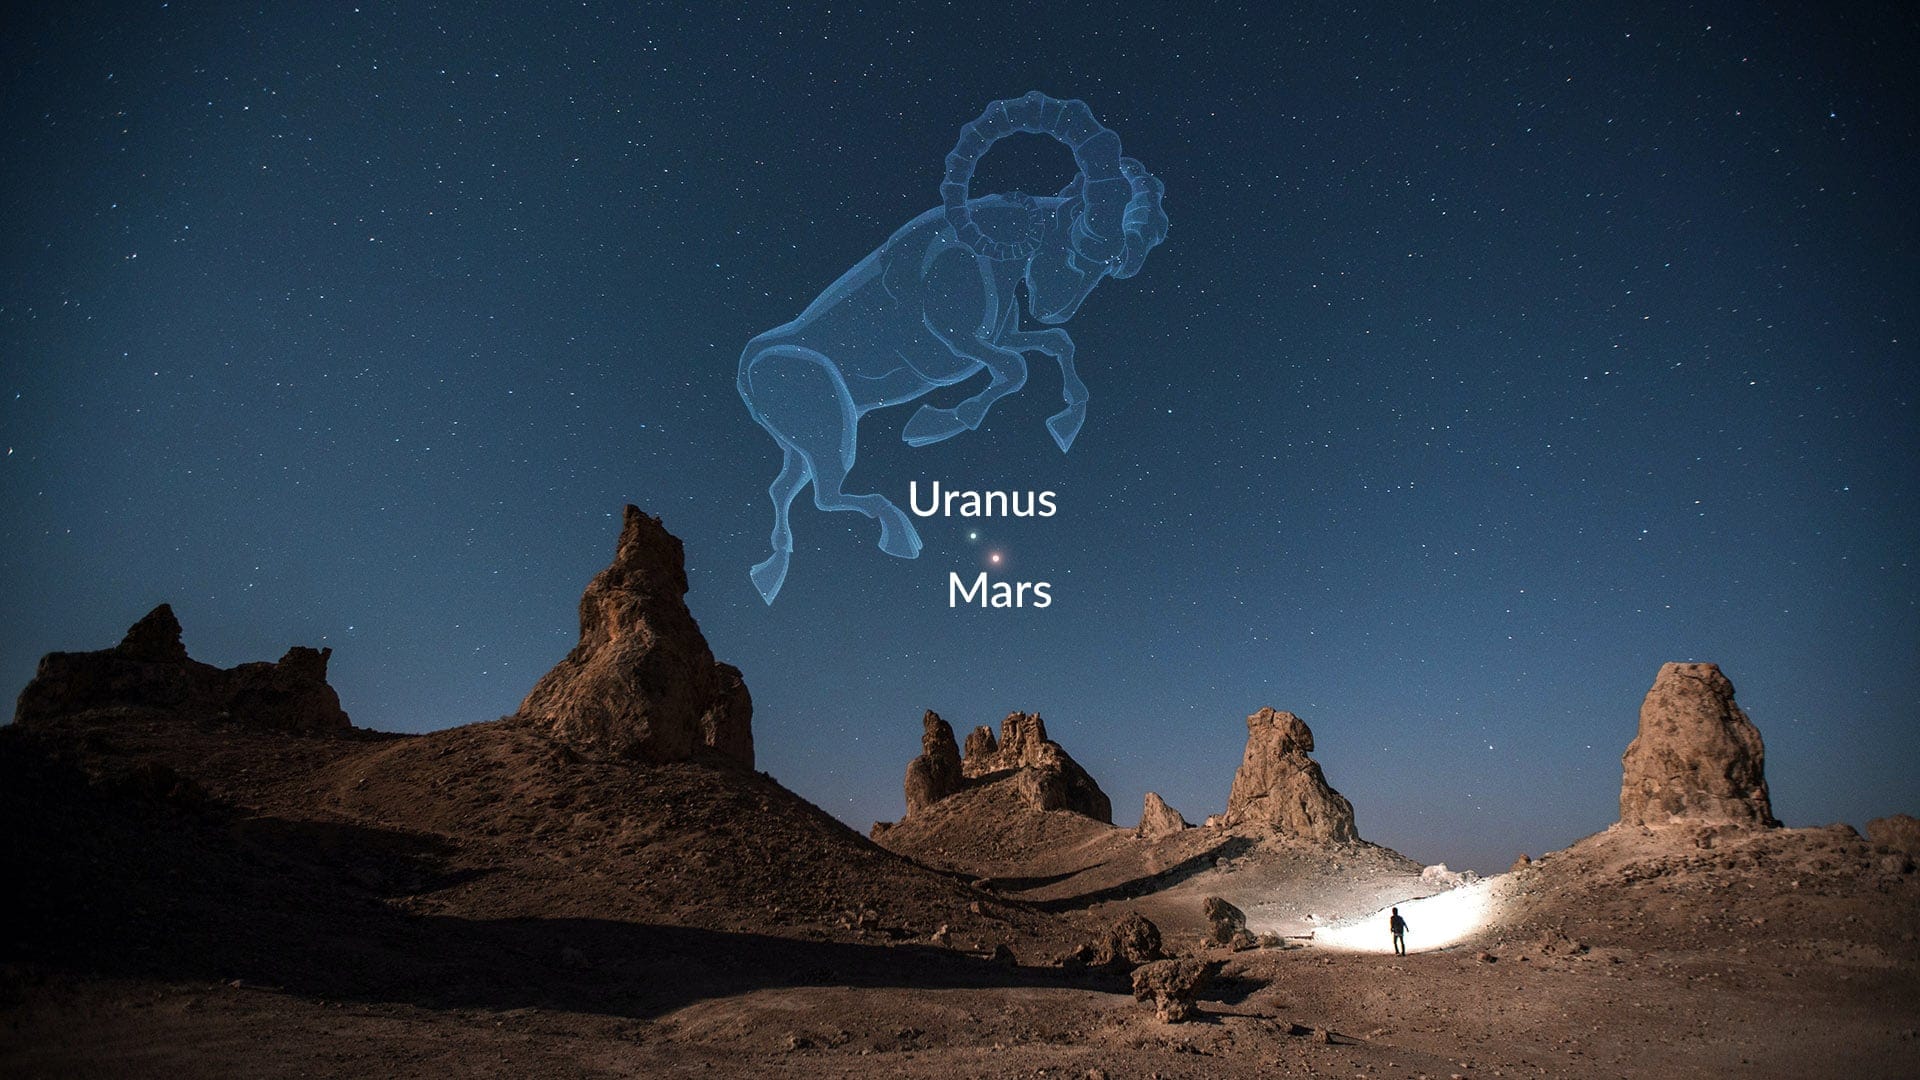 Mars and Uranus in the constellation Aries